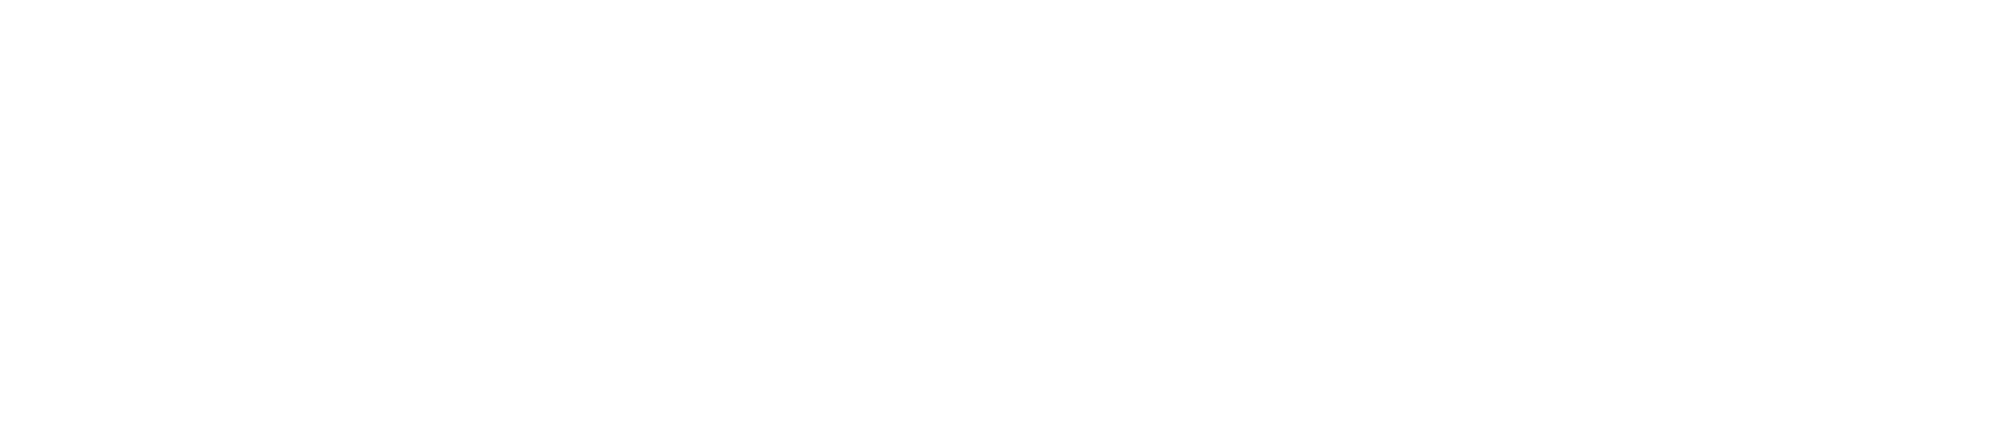 Veteran's Deluxe Cleaners